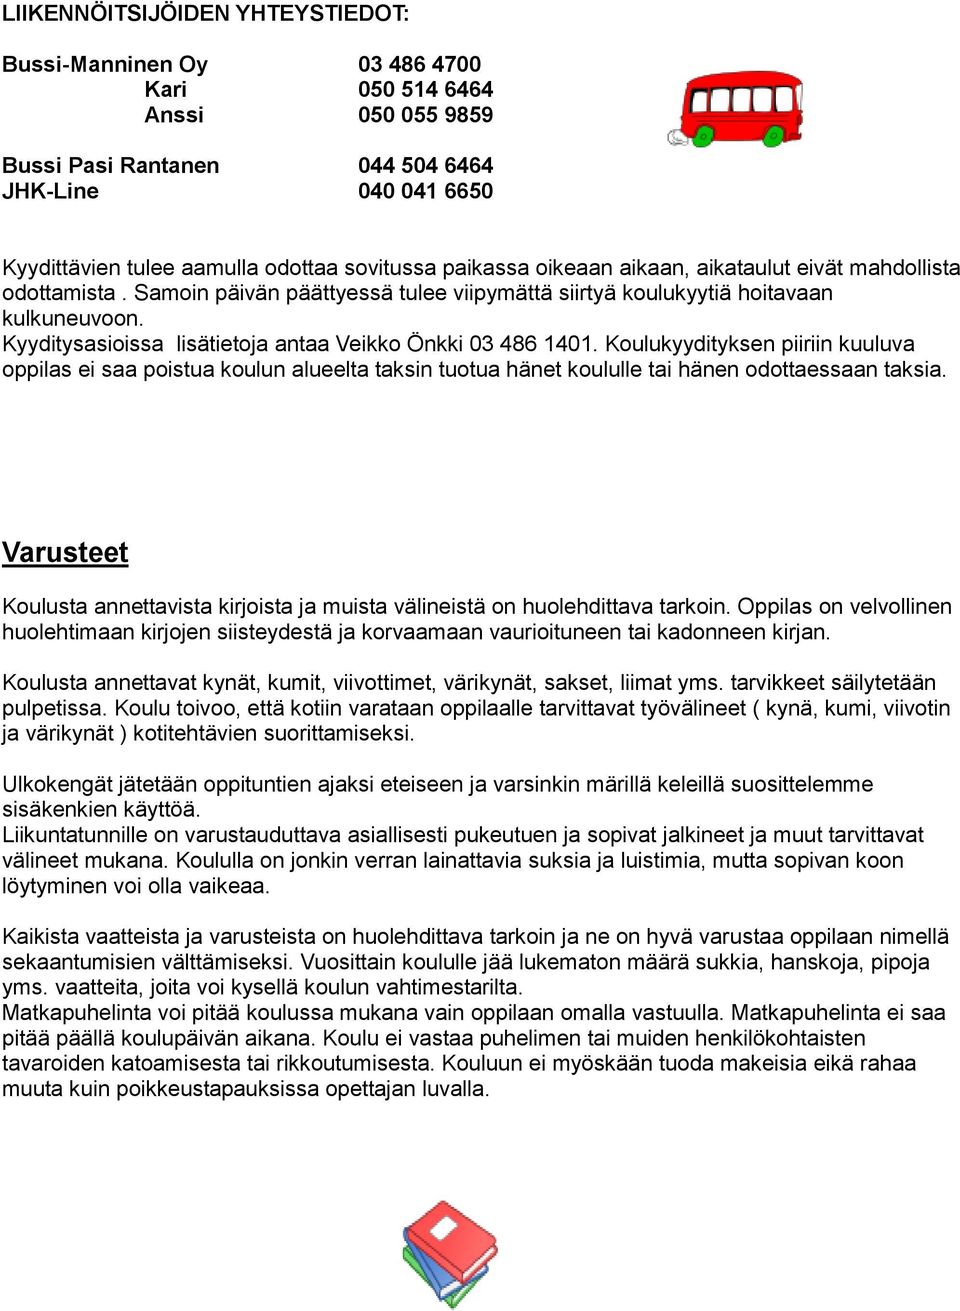 Kyyditysasioissa lisätietoja antaa Veikko Önkki 03 486 1401. Koulukyydityksen piiriin kuuluva oppilas ei saa poistua koulun alueelta taksin tuotua hänet koululle tai hänen odottaessaan taksia.